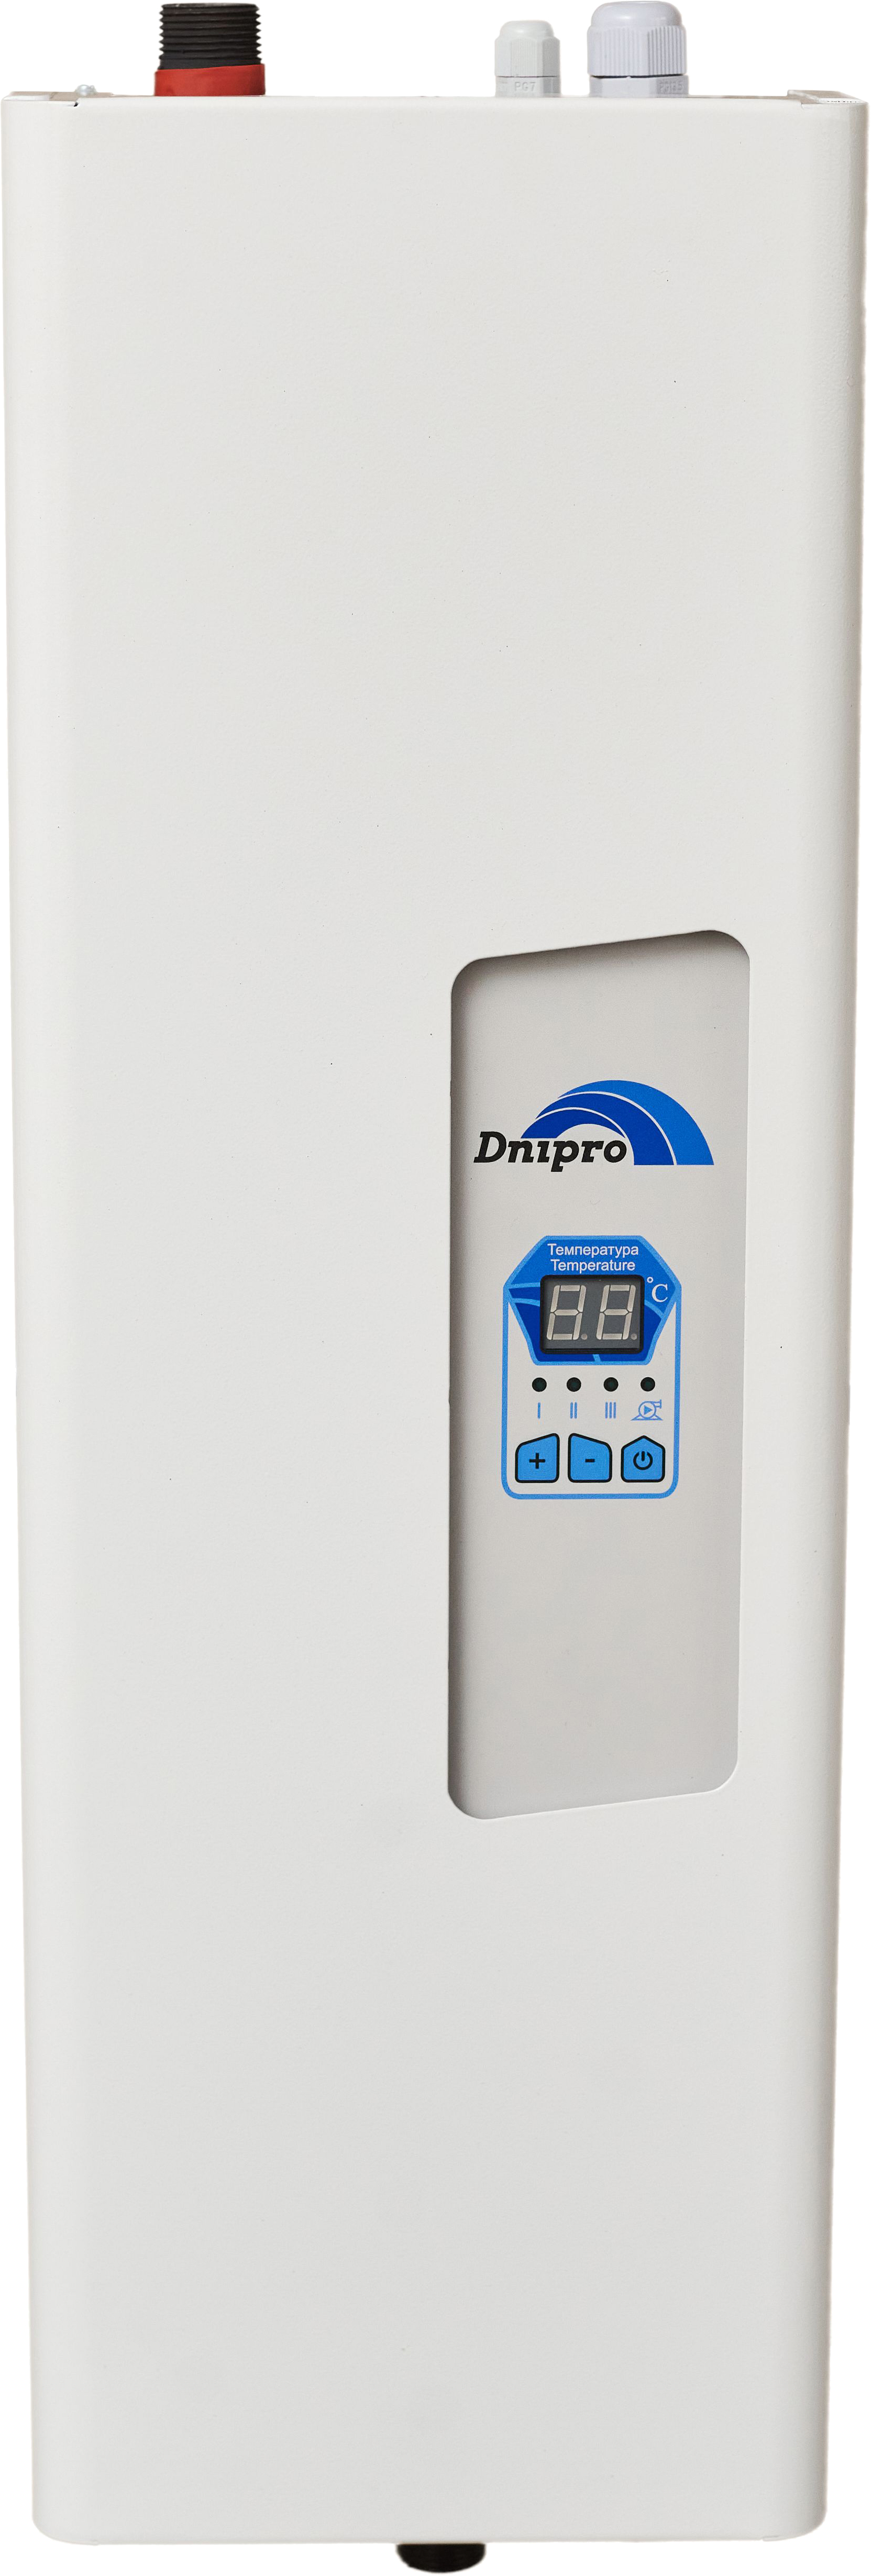 Электрокотел Dnipro 9 кВт Dnipro Мини с насосом КЭО-М 9 кВт 380